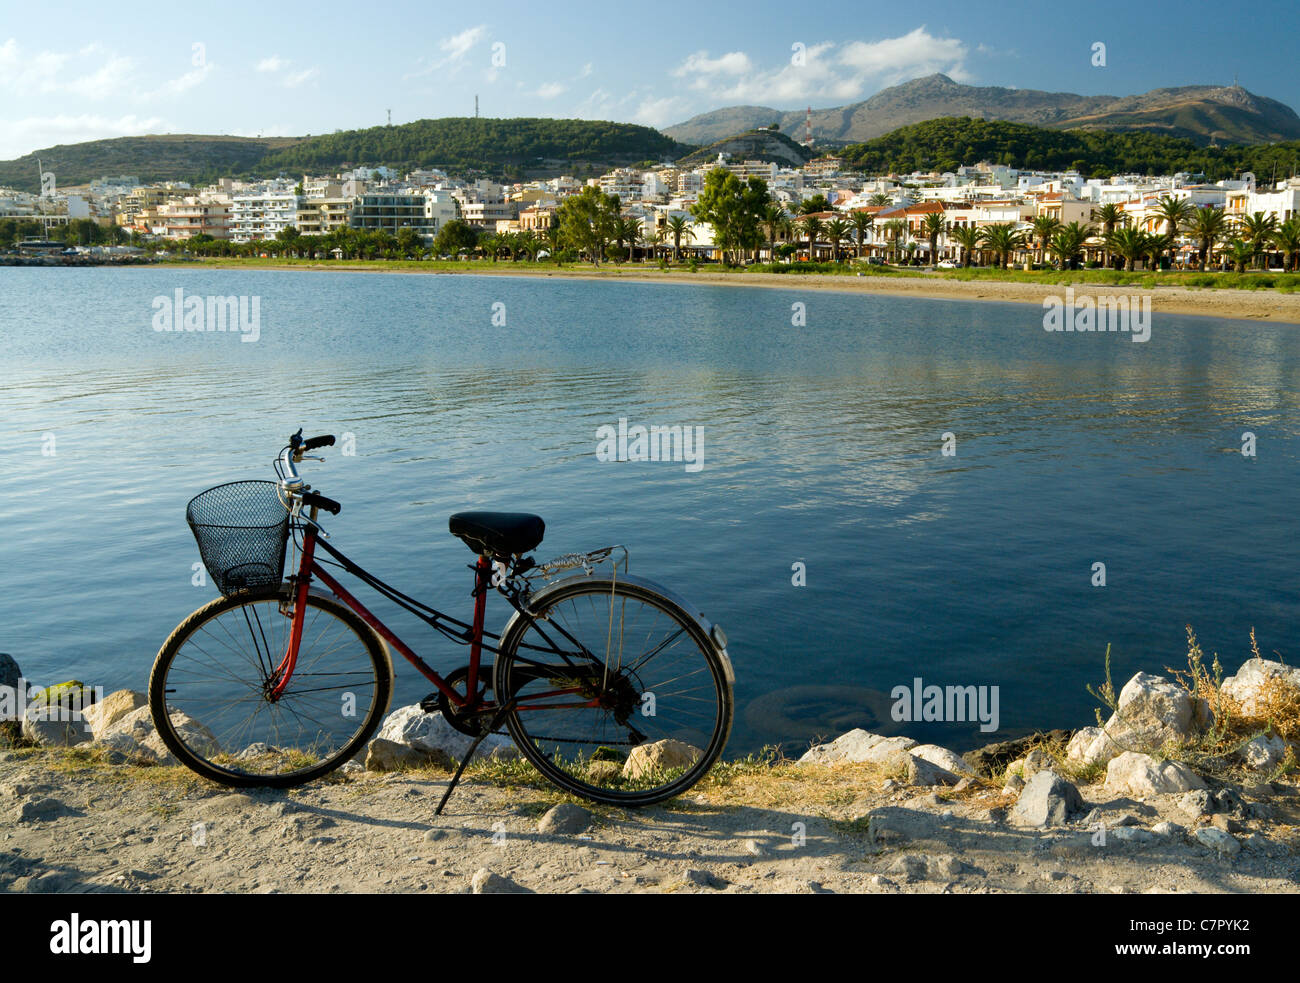 Location outre mer avec ville de Rethymnon à distance, Crète, Grèce. Banque D'Images